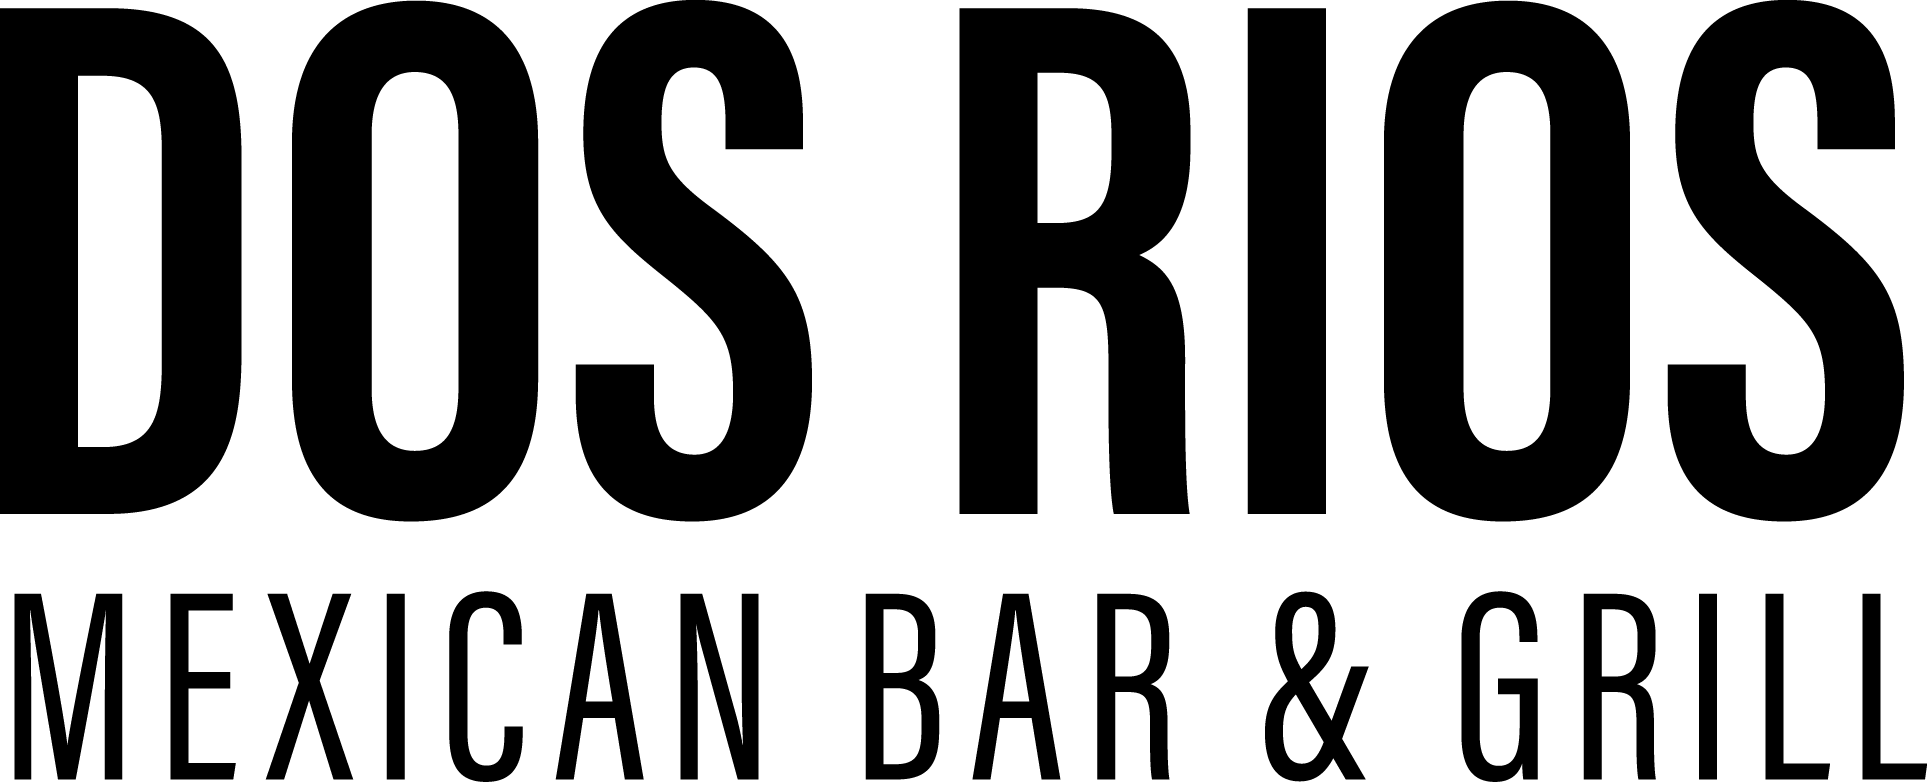 Mexican Black and White Logo - Dos Rios Mexican Bar & Grill